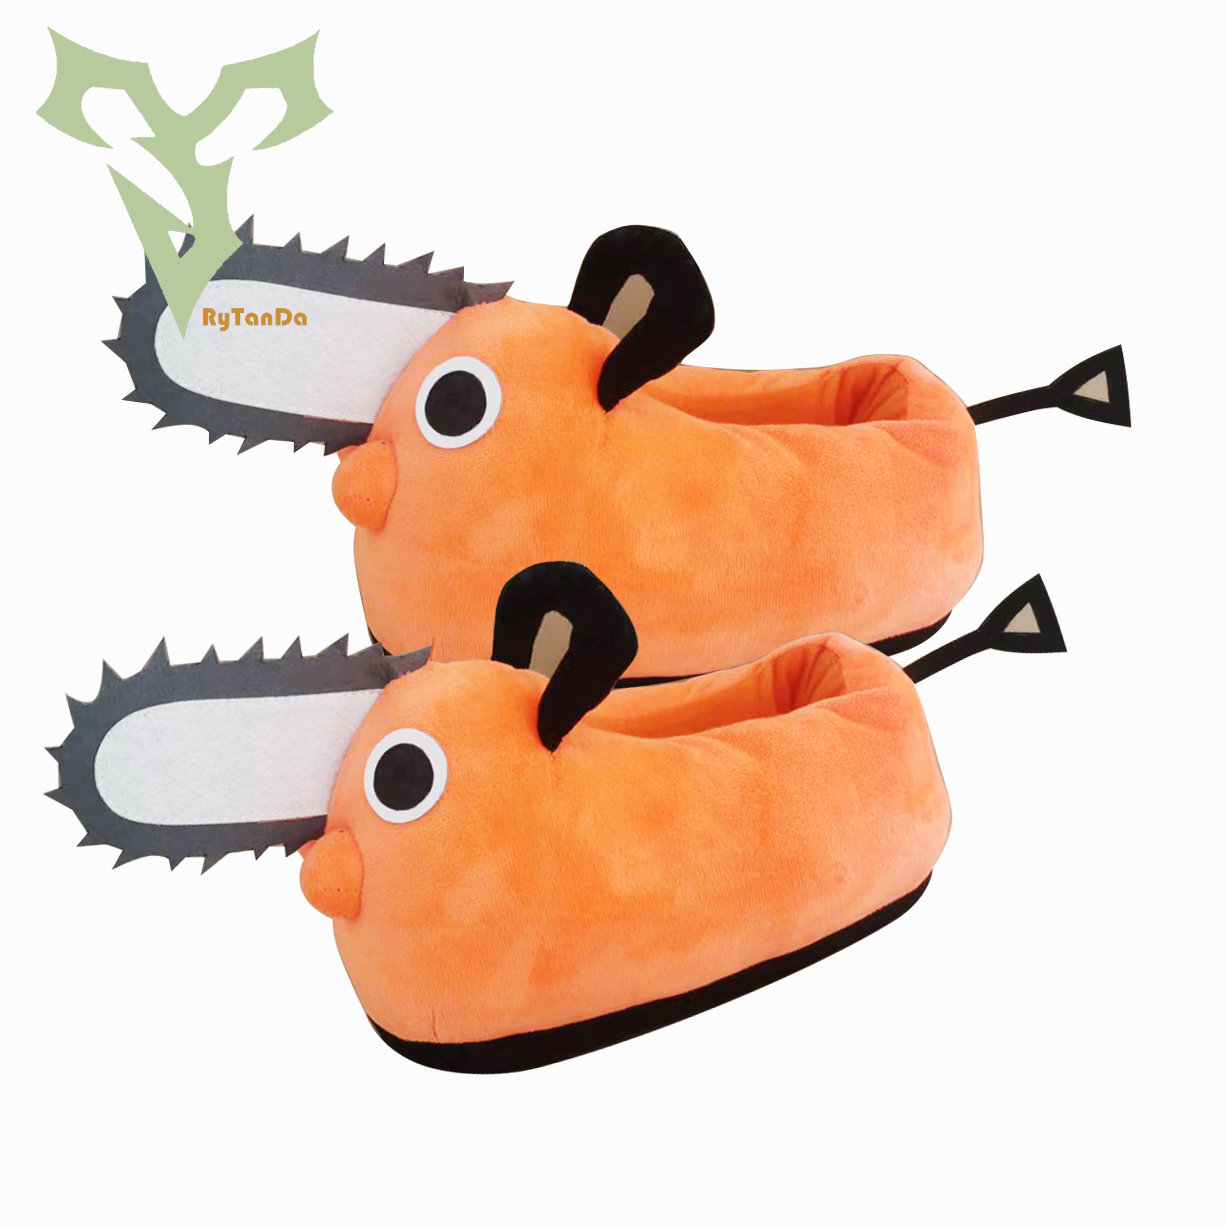 Chainsaw Man Pochita Plush Slipper Pochita Peluche Chainsawman Shoes Anime Happy Orange Dog Stuffed Soft Toy - Chainsaw Man Plush